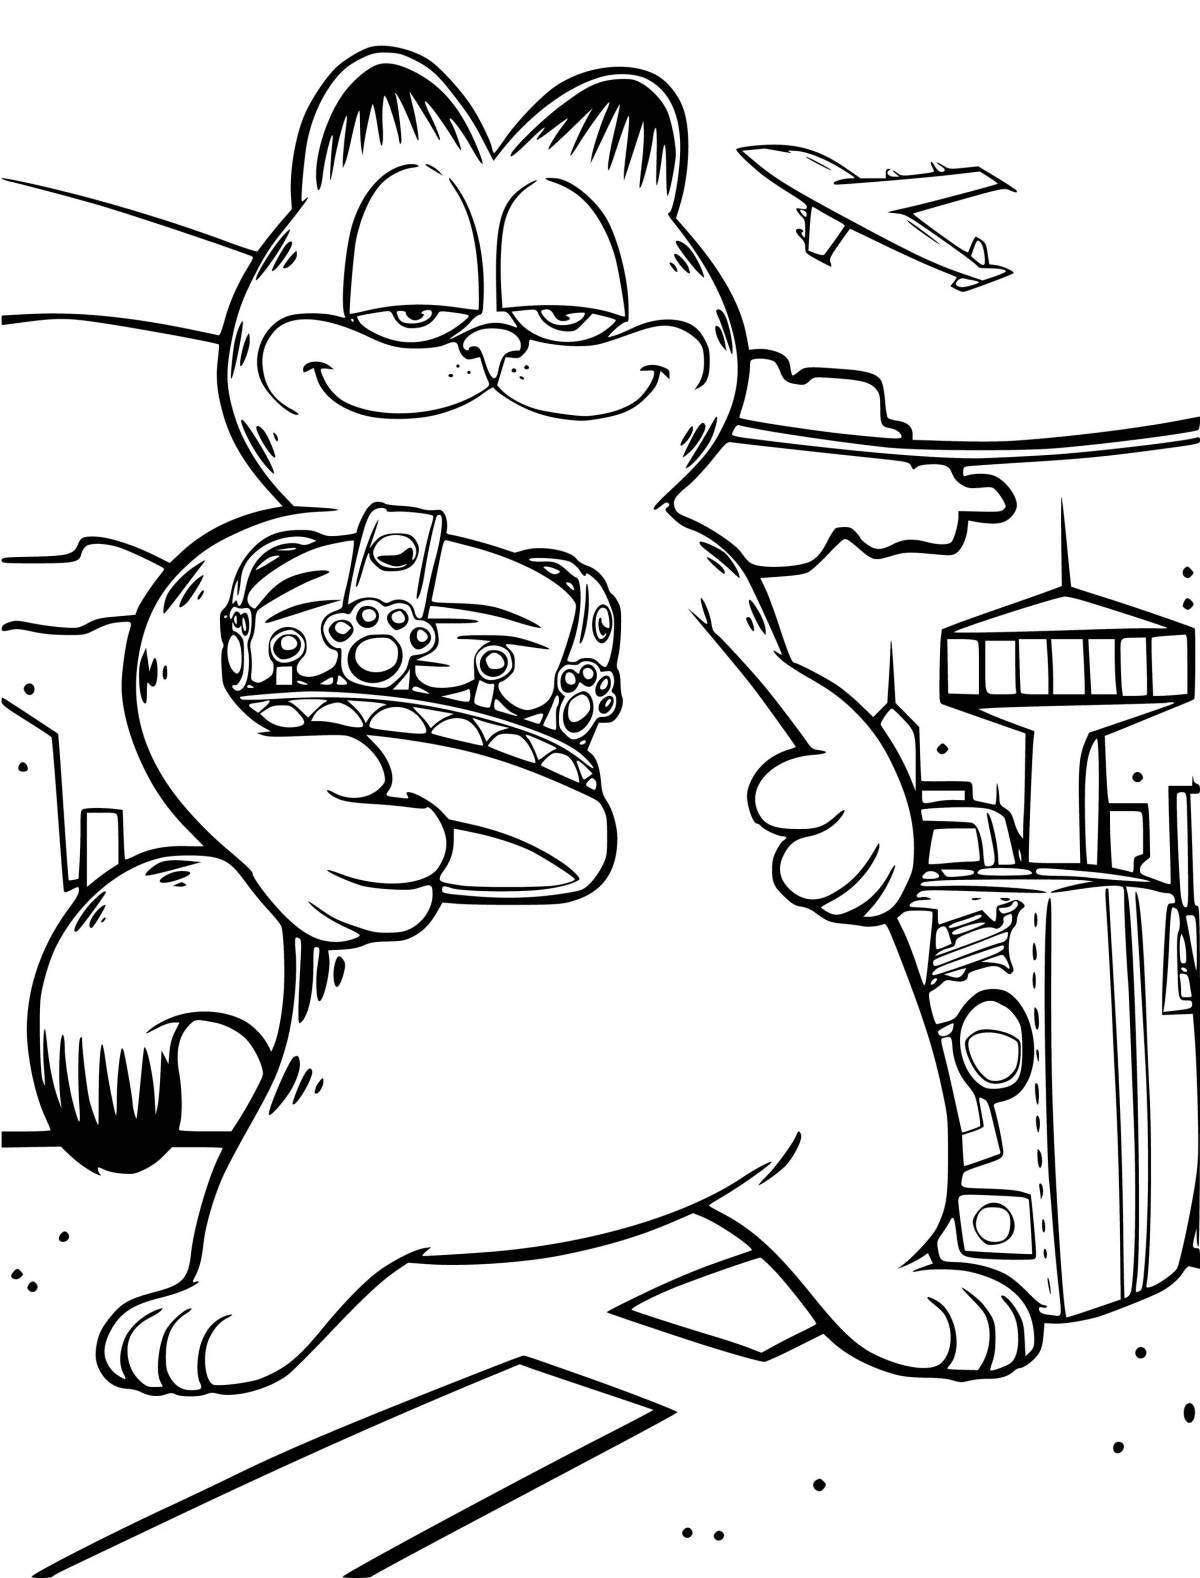 Garfield fun coloring book